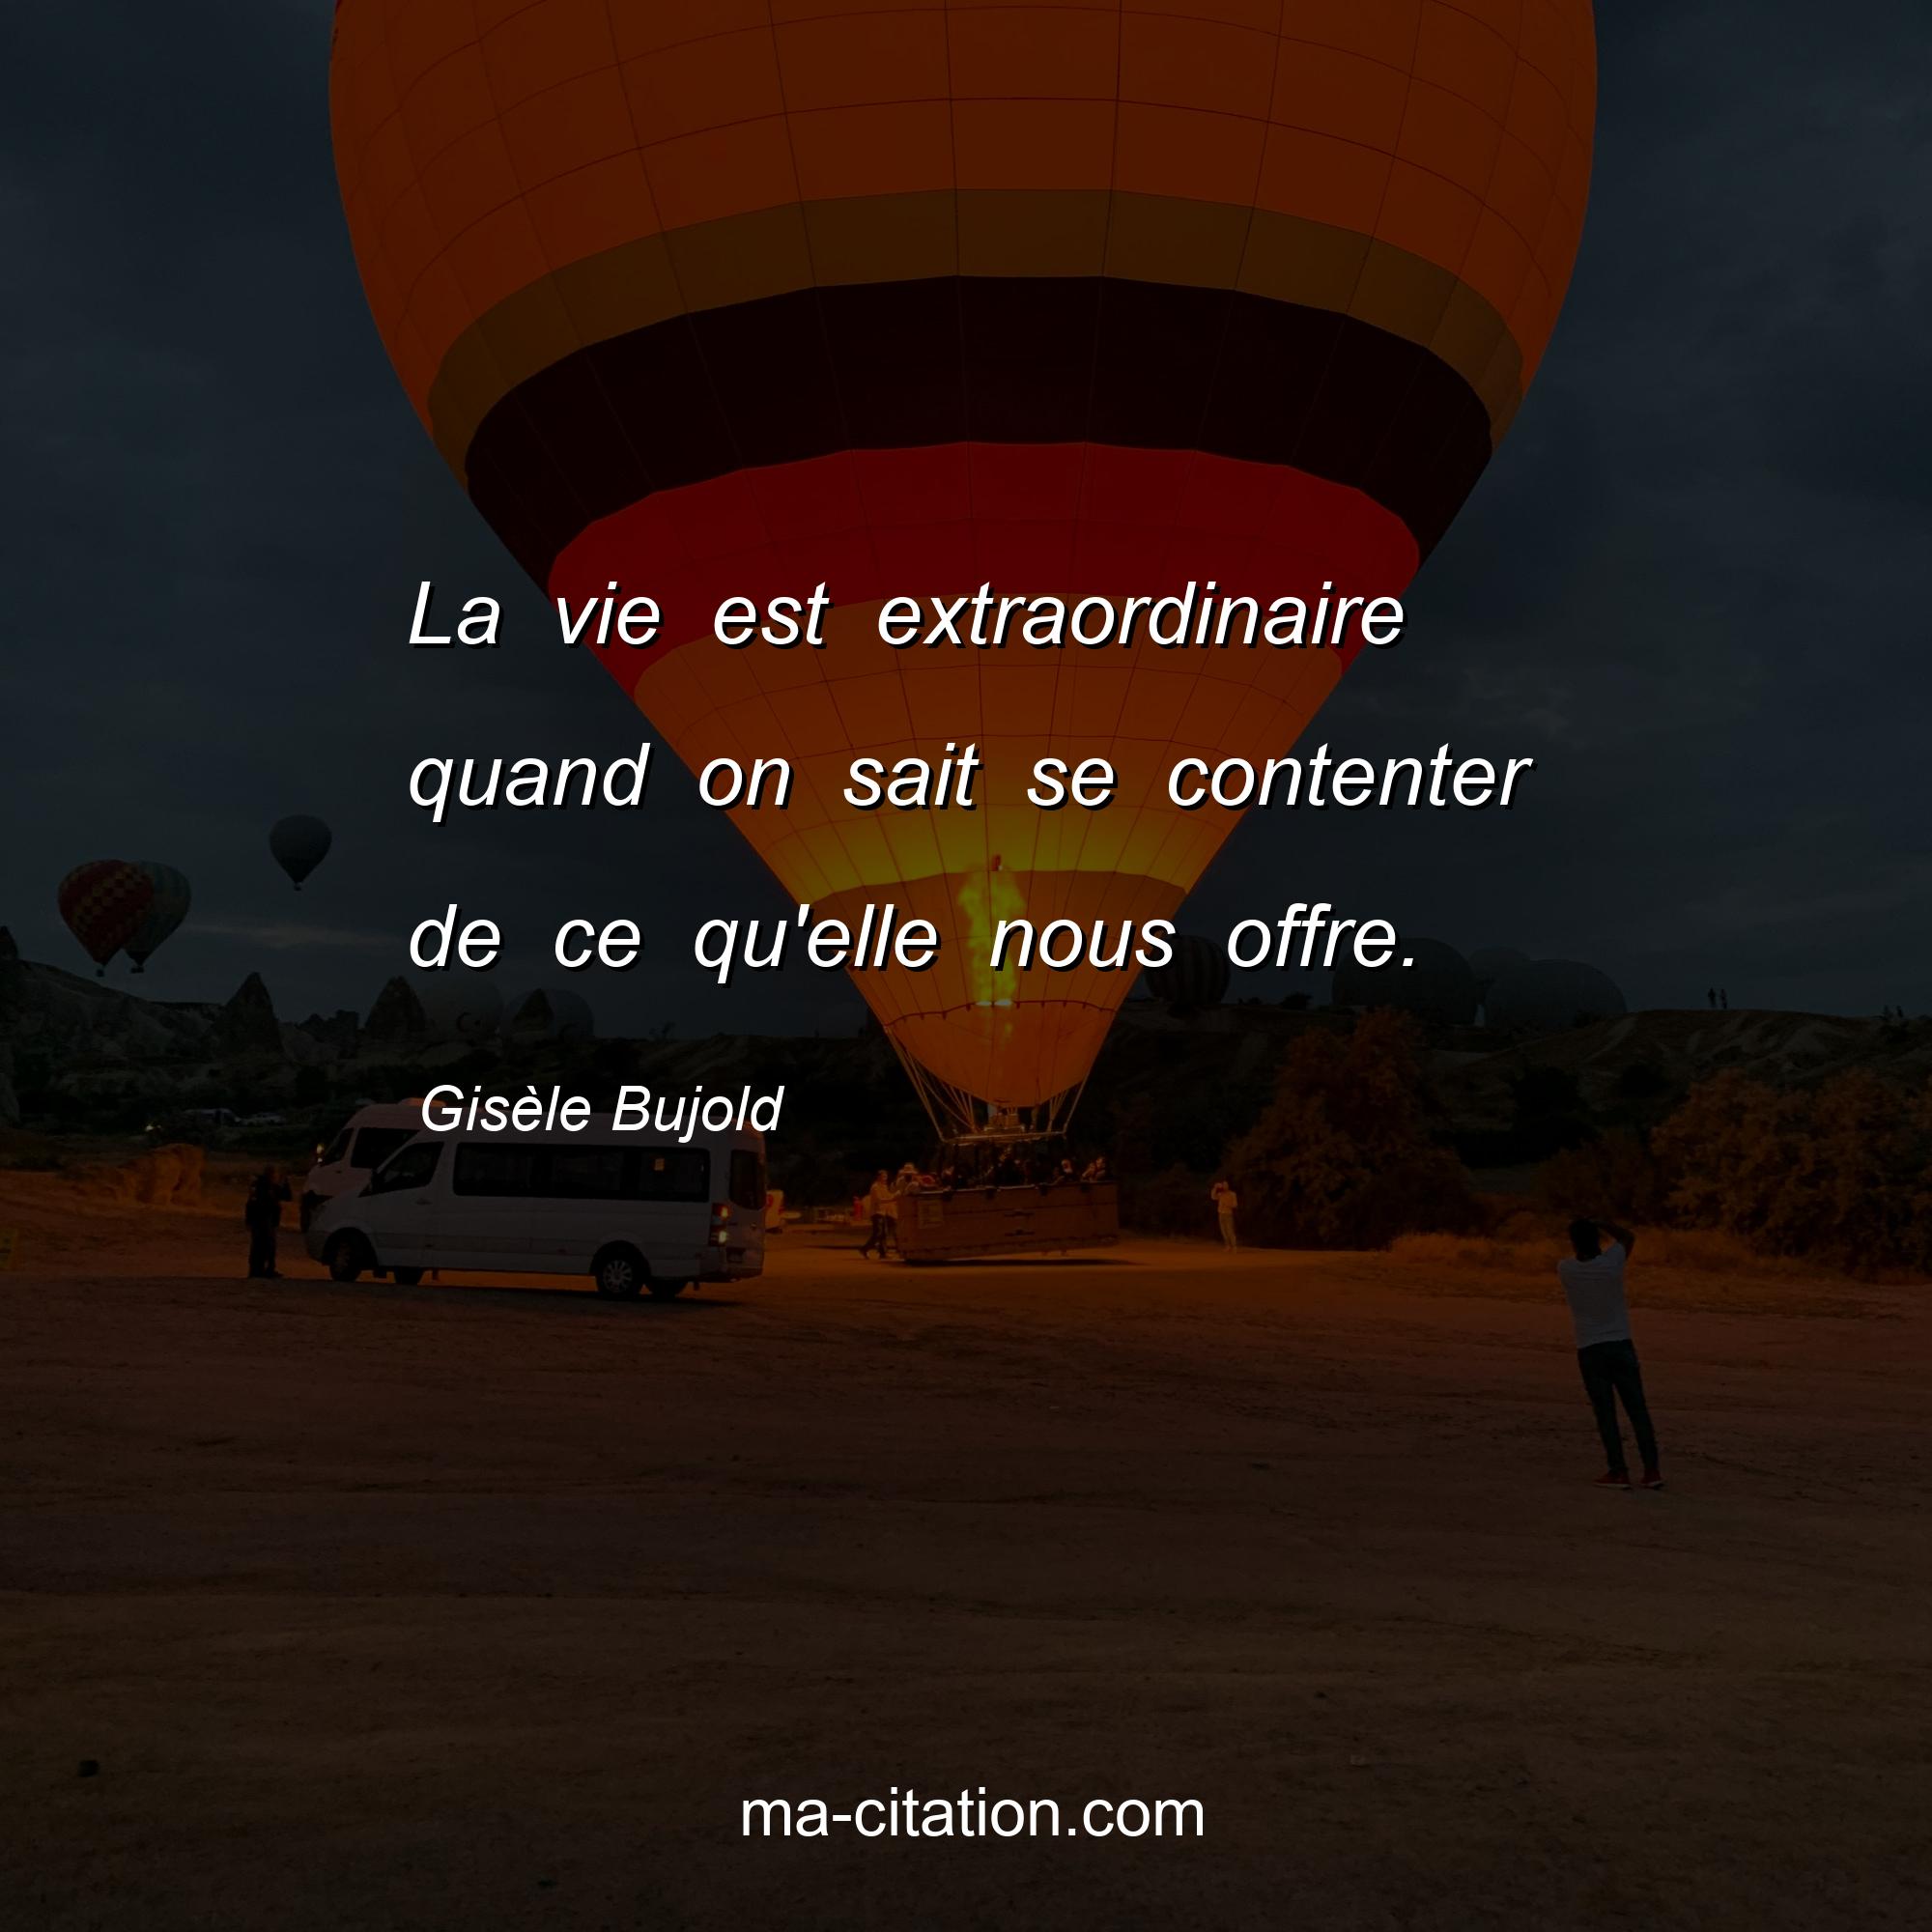 Gisèle Bujold : La vie est extraordinaire quand on sait se contenter de ce qu'elle nous offre.